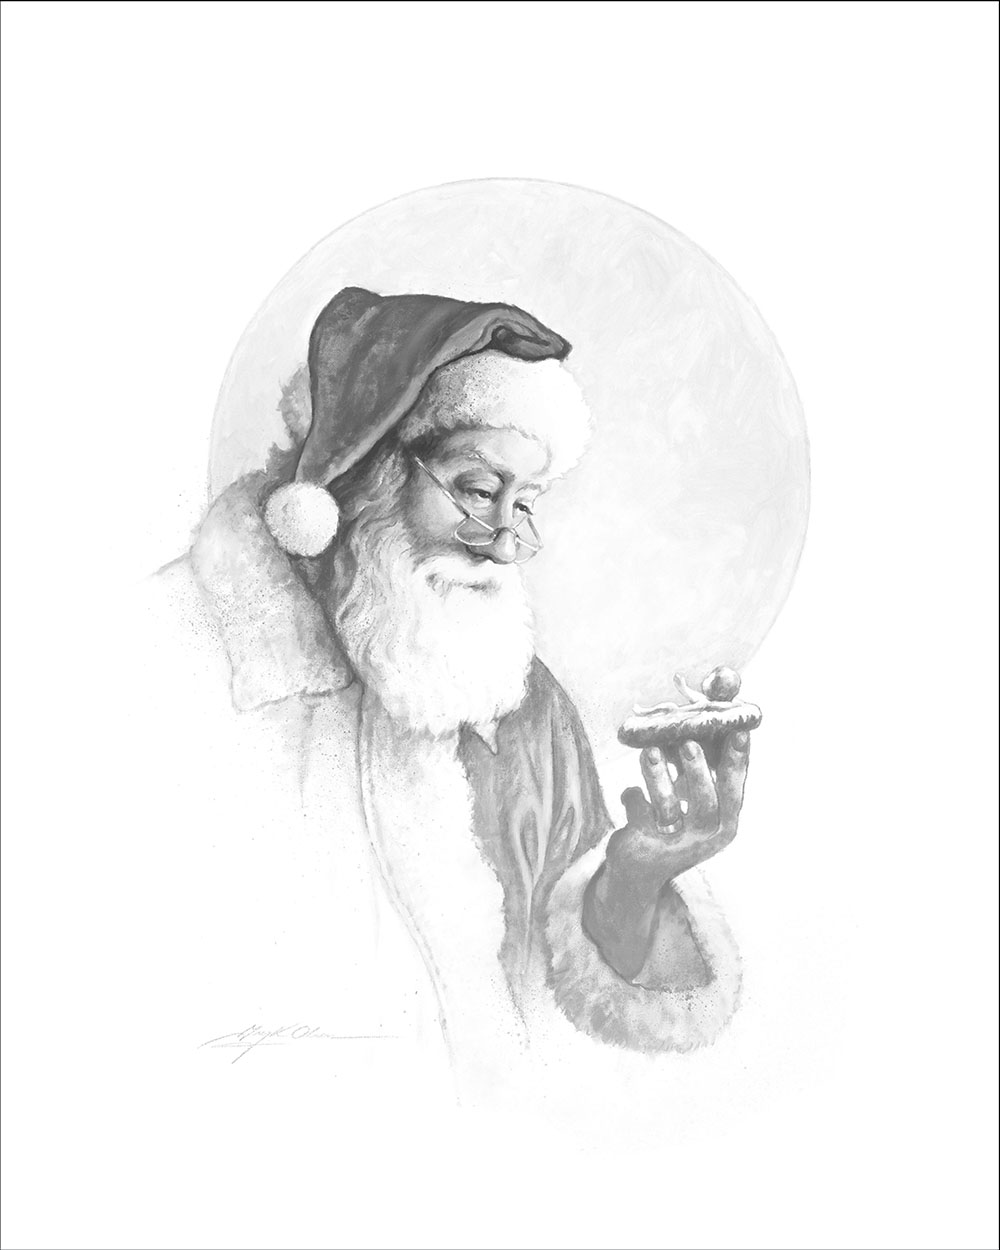 The Spirit Christmas Vignette by Greg Olsen